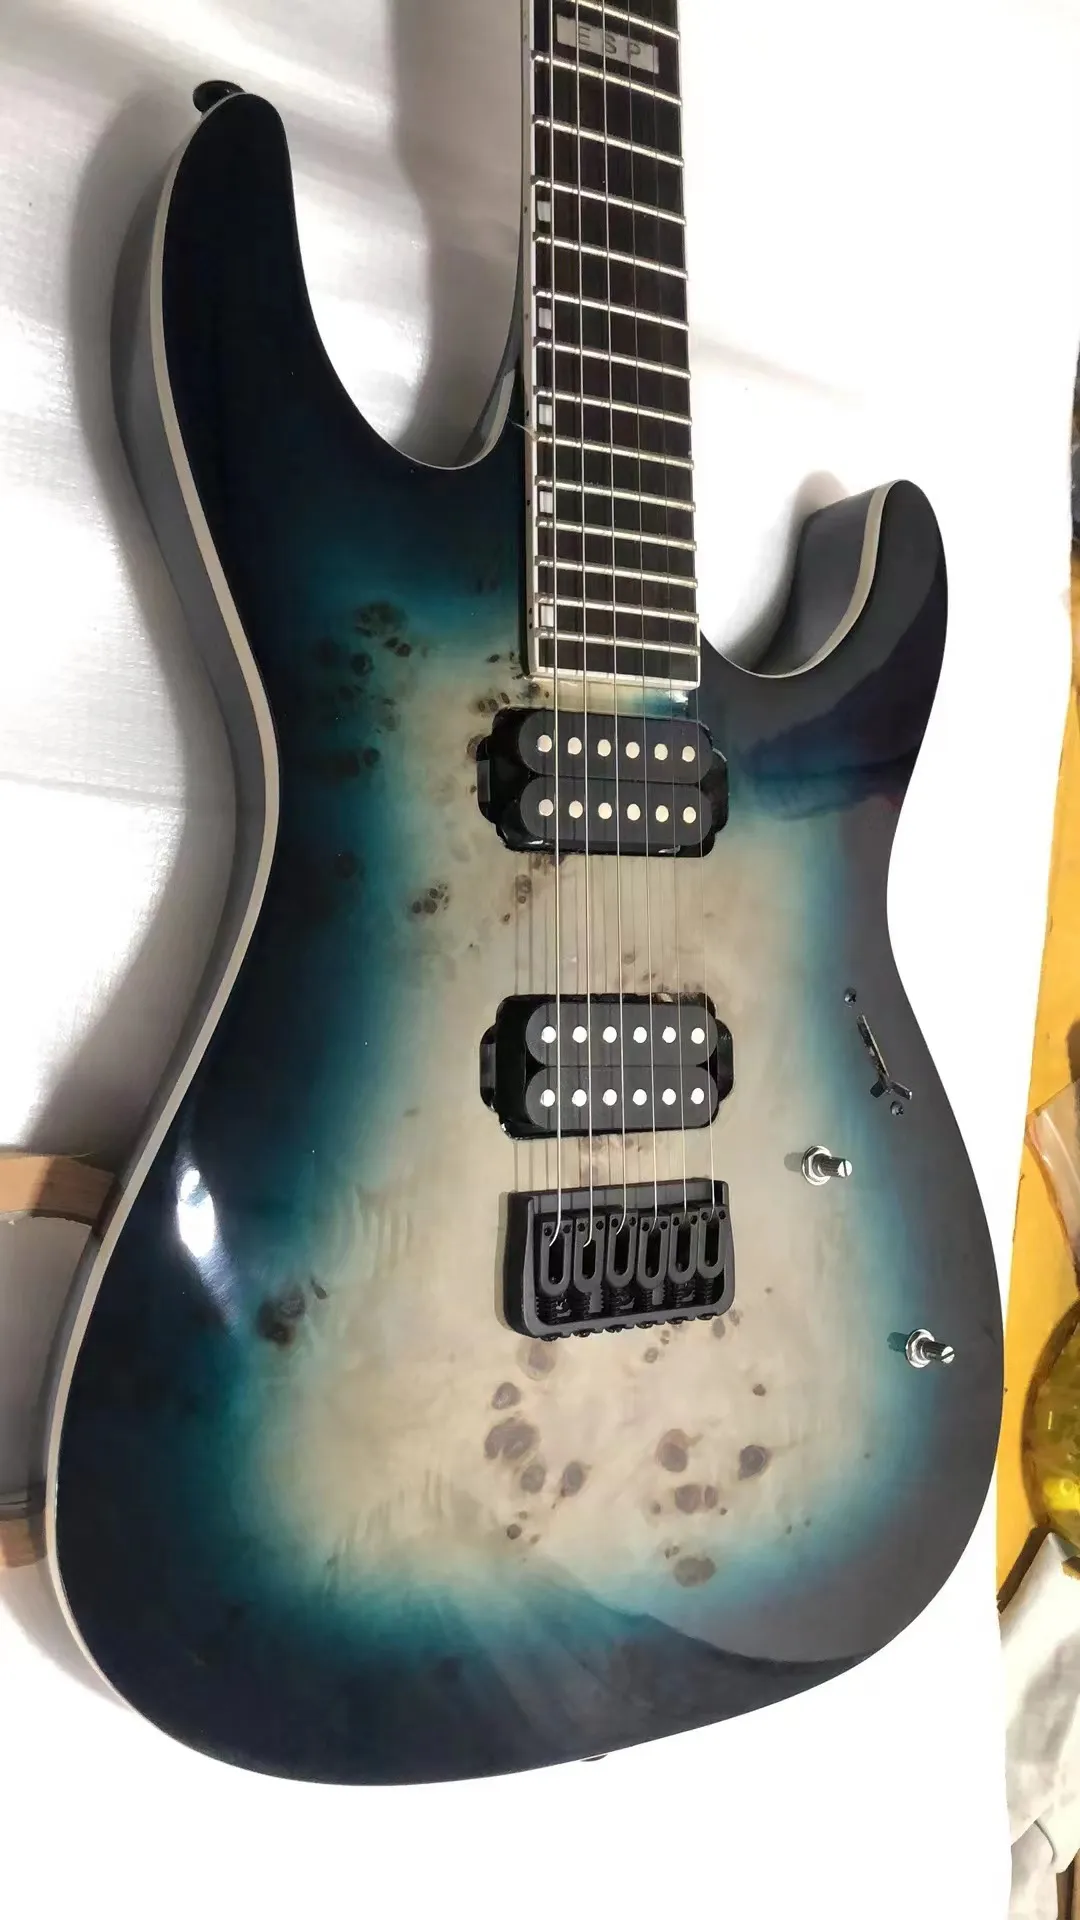 OME Electric Guitar إنهاء الأزرق الماهوغوني الجسم الأسود